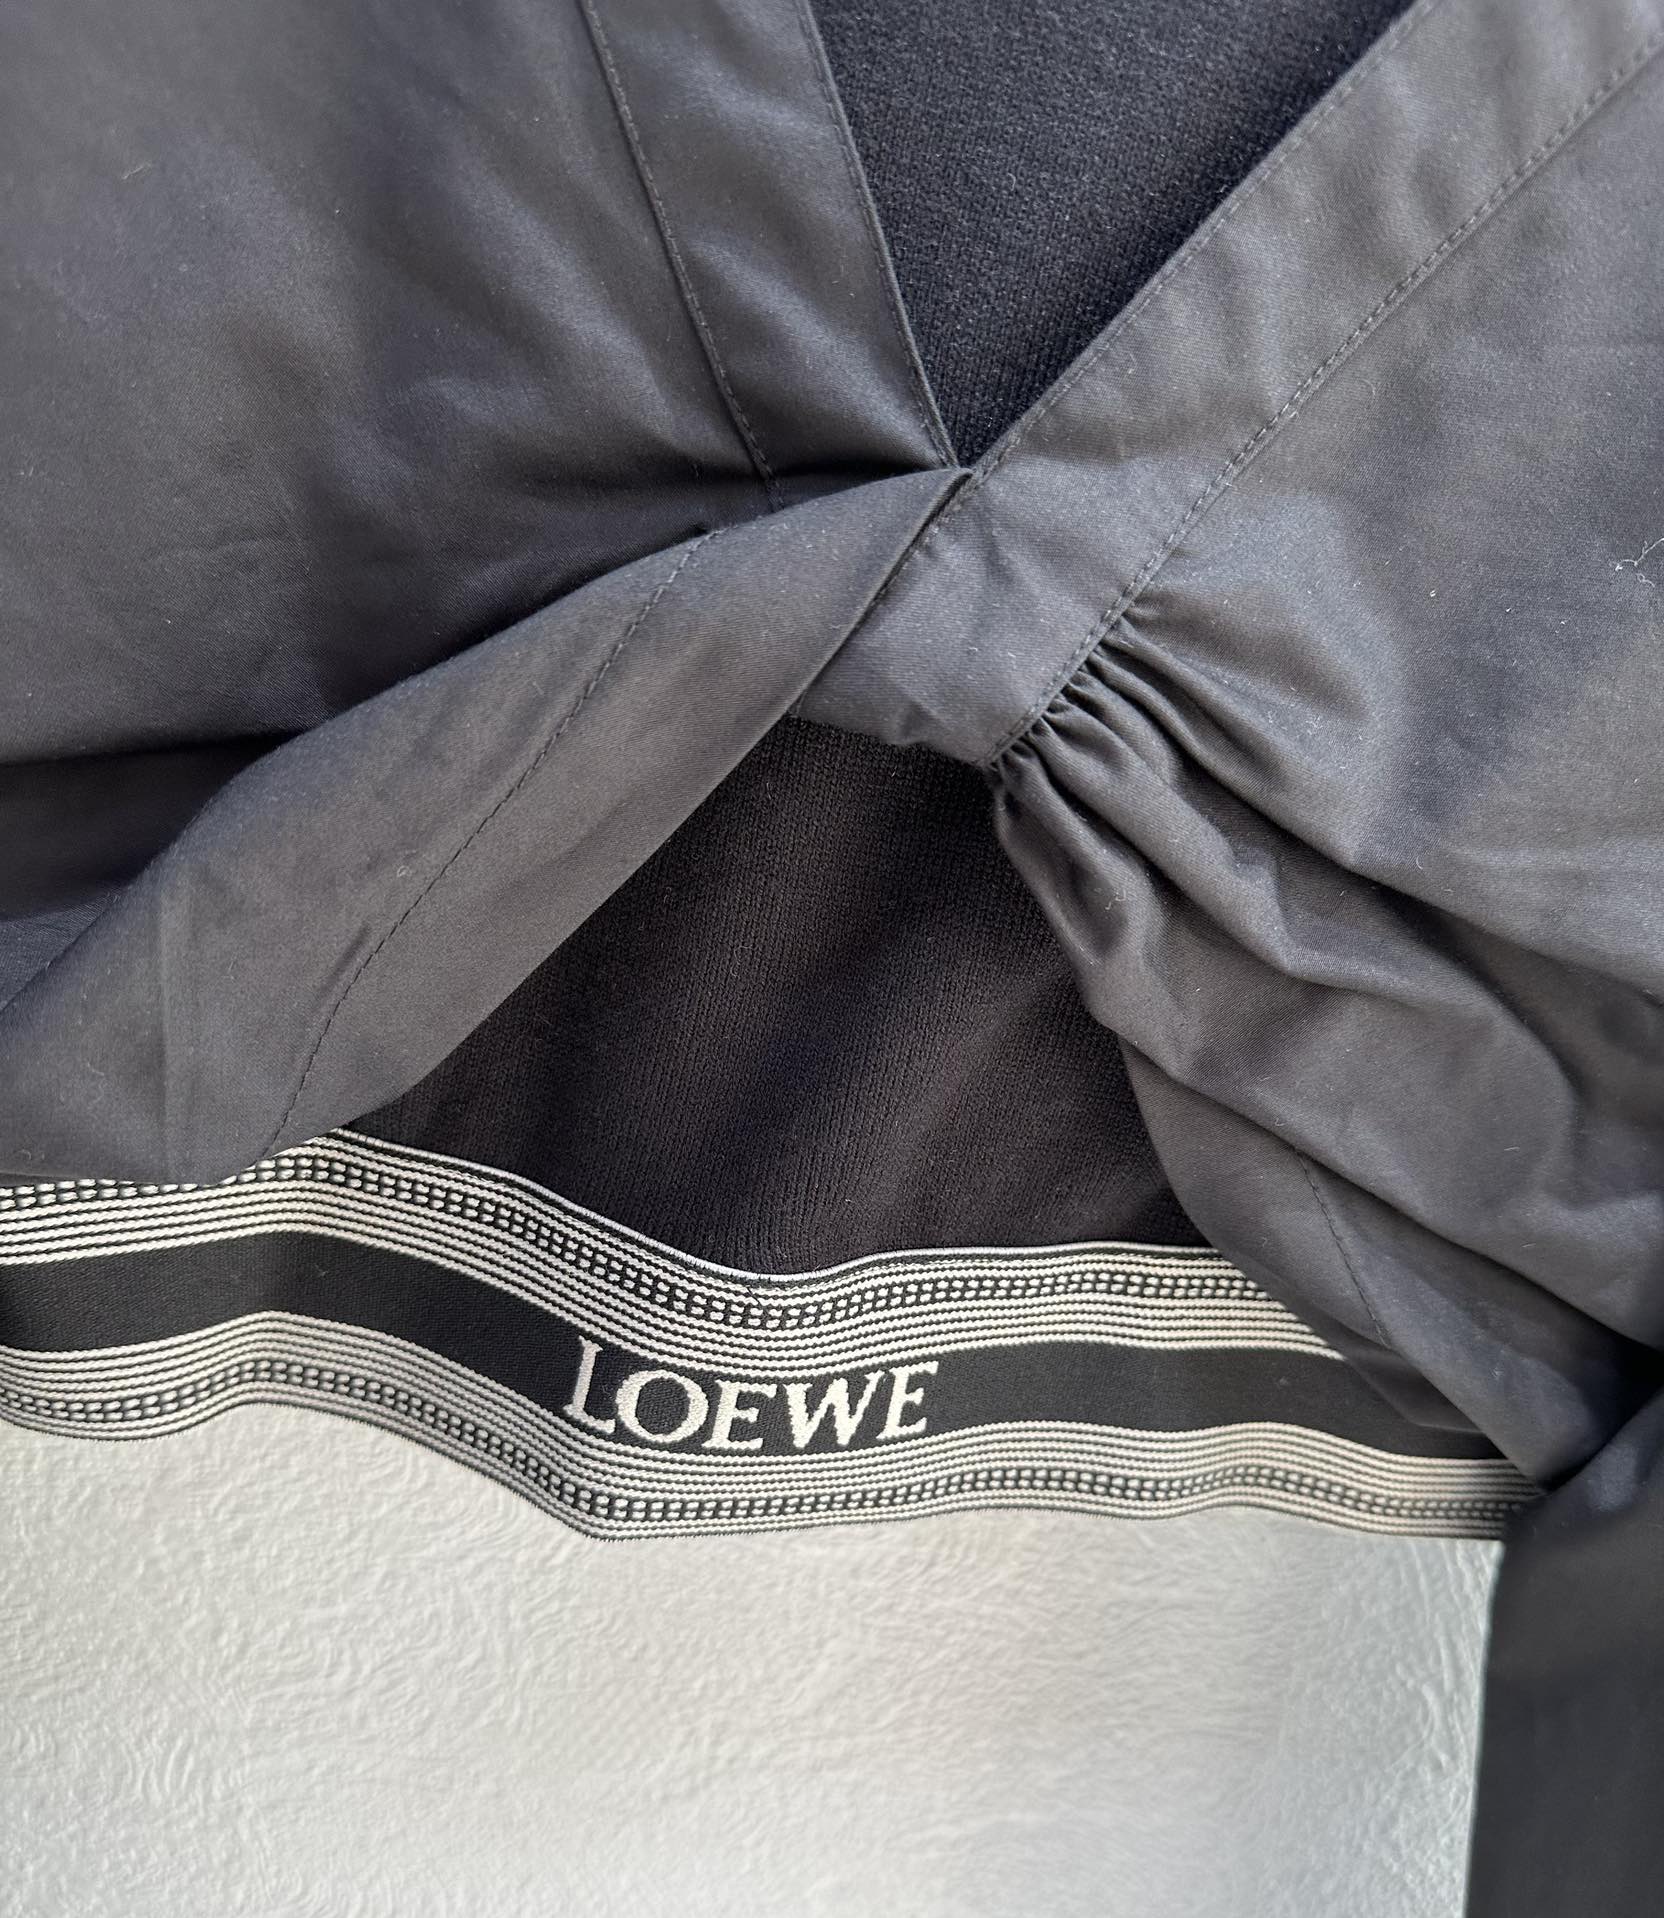 爆单推荐Loew*24早春新品时髦精必入超短款衬衫假两件套！内搭罗纹针织小背心一套上身时髦帅气！露肩设计